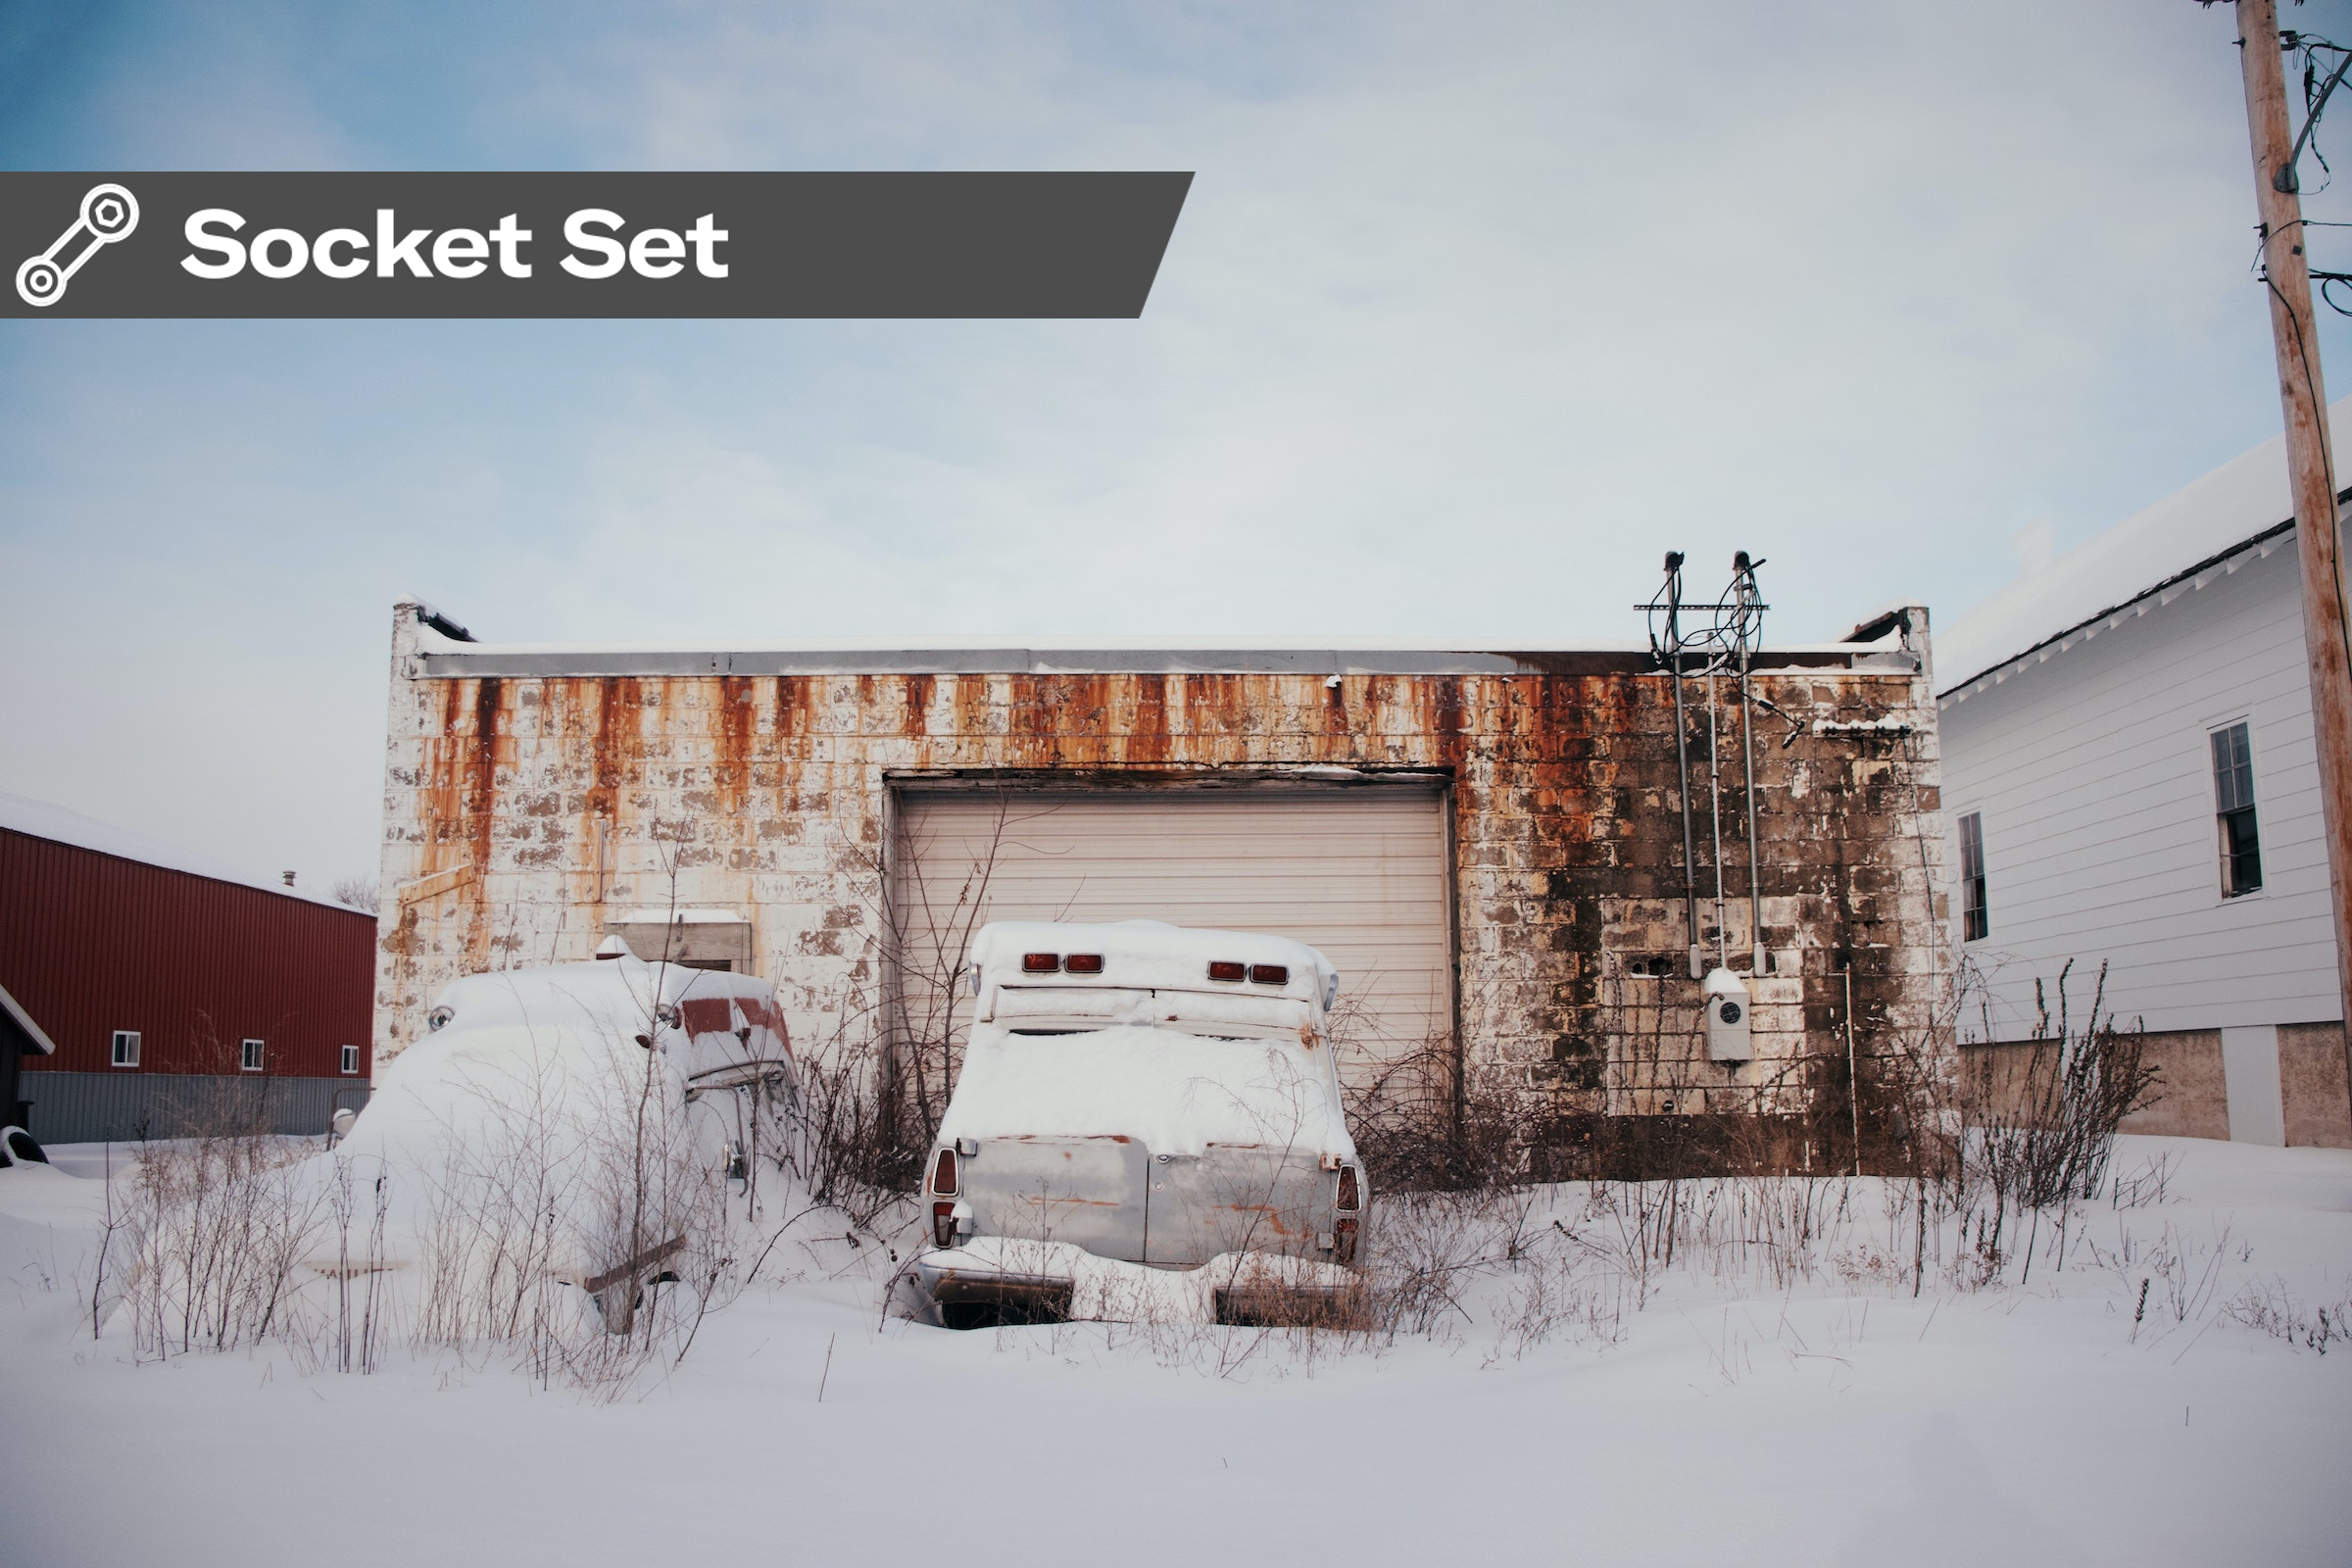 Socket Set: Make your workshop winter-proof